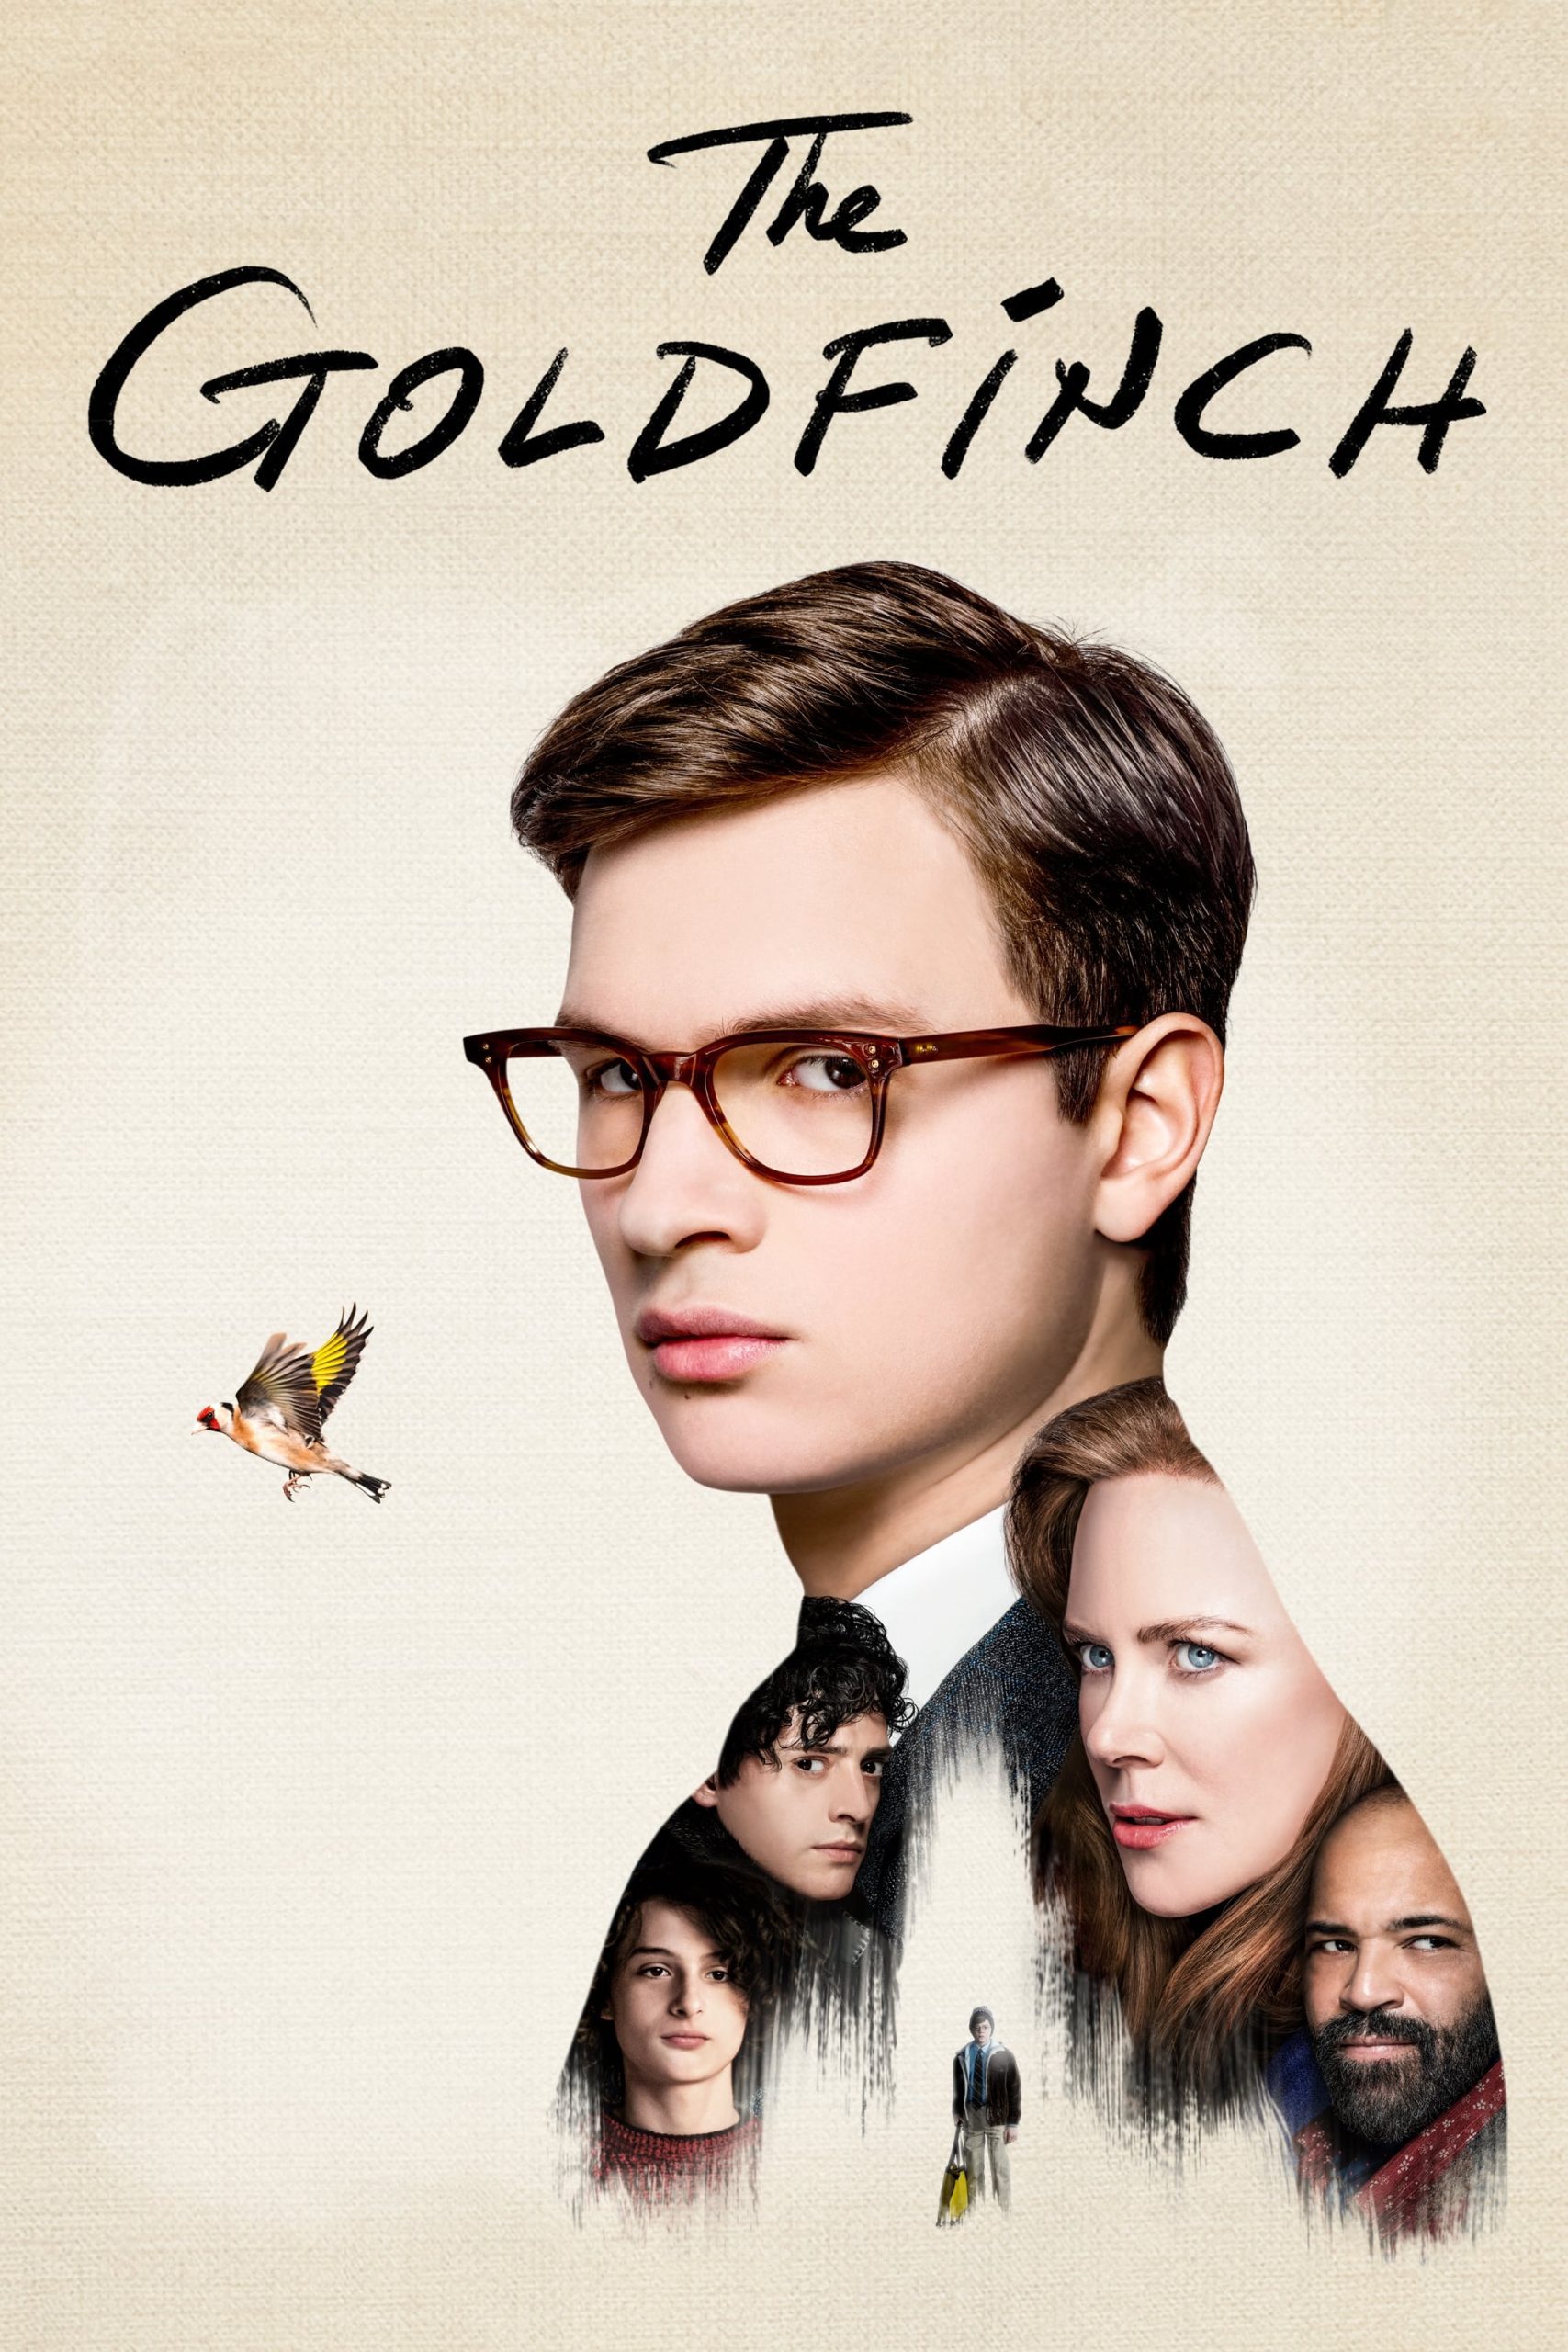 ดูหนังออนไลน์ฟรี The Goldfinch เดอะ โกล์ดฟินช์